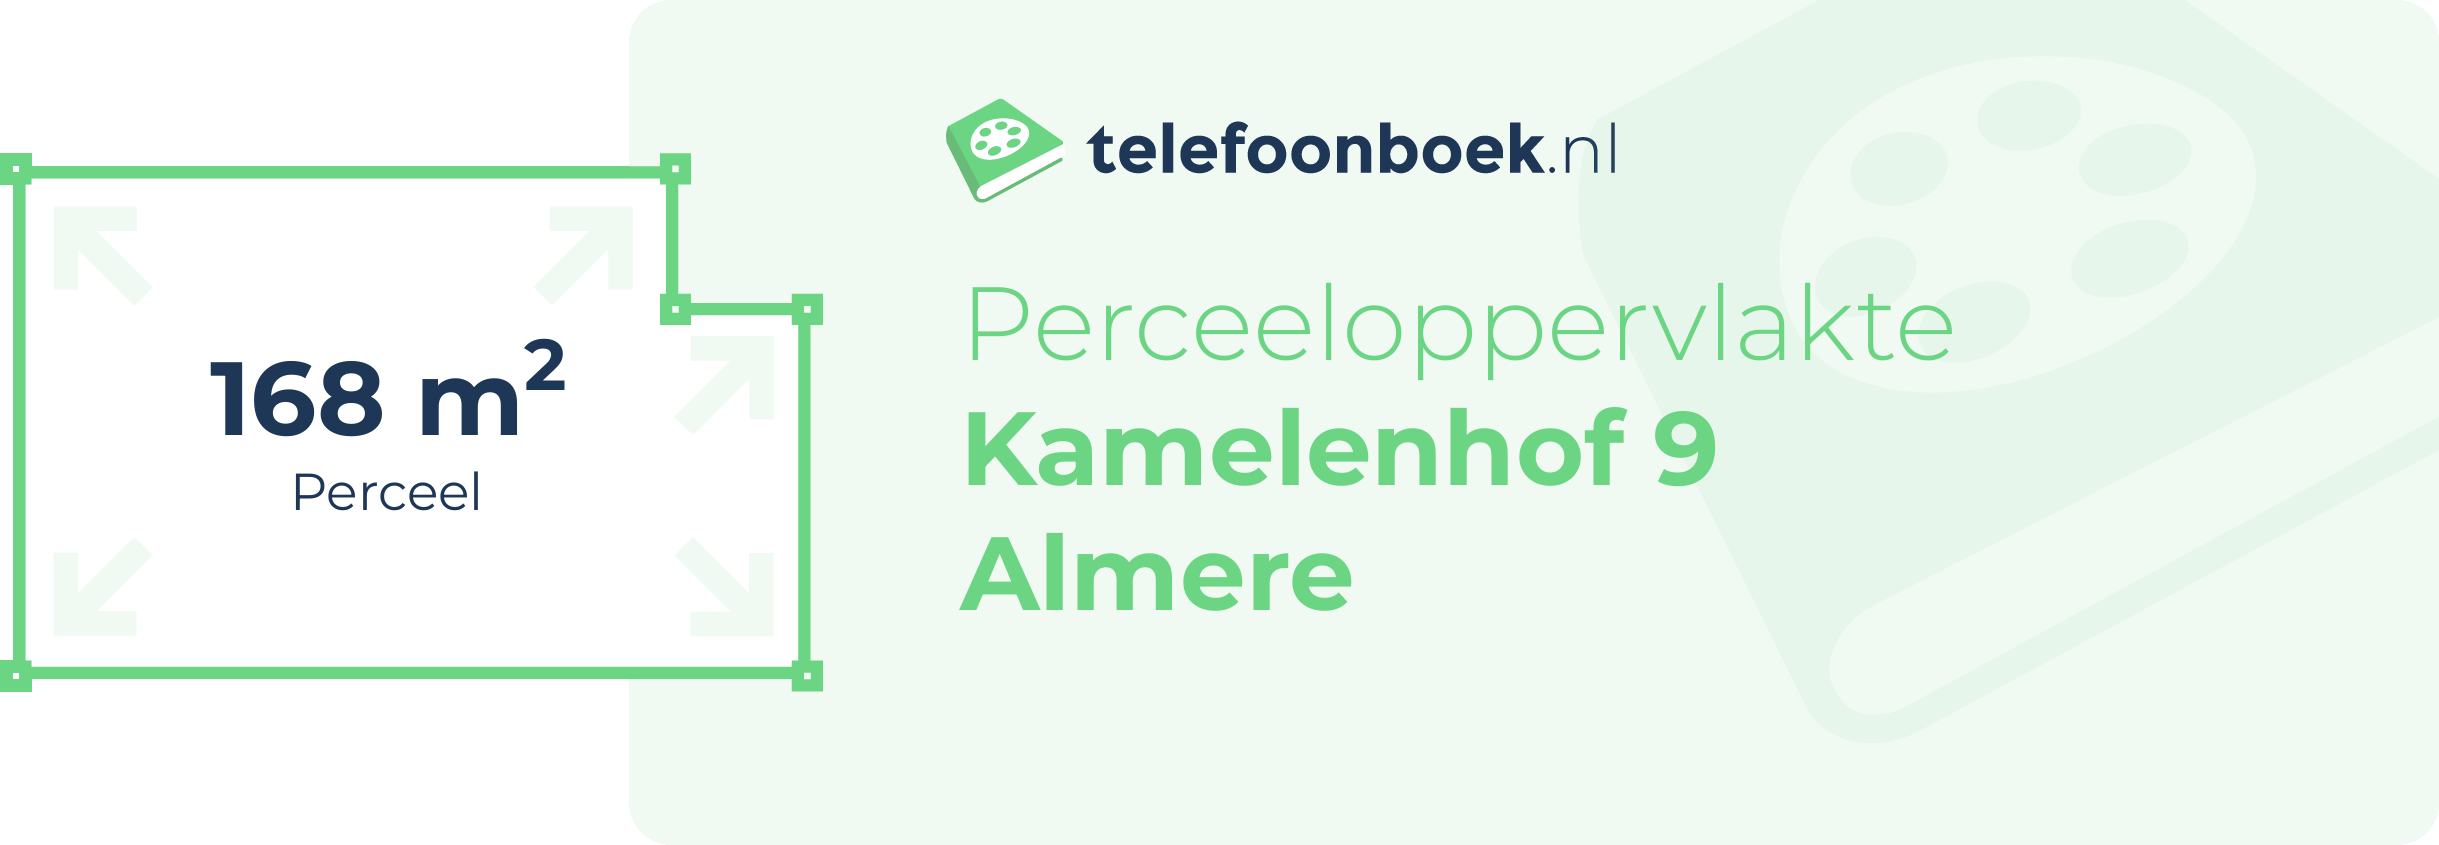 Perceeloppervlakte Kamelenhof 9 Almere